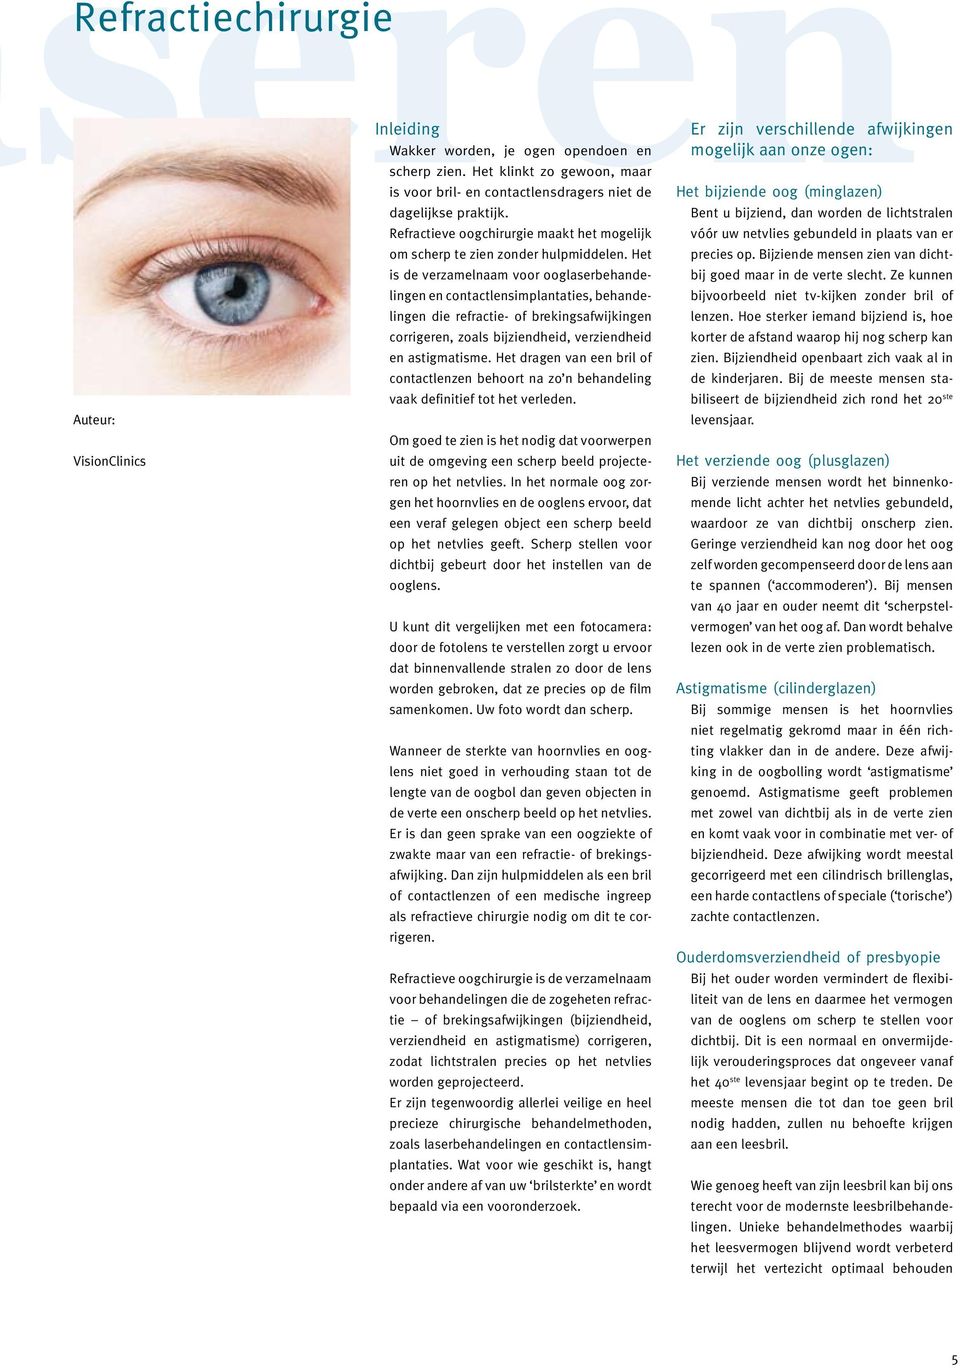 Het is de verzamelnaam voor ooglaserbehandelingen en contactlensimplantaties, behandelingen die refractie- of brekingsafwijkingen corrigeren, zoals bijziendheid, verziendheid en astigmatisme.